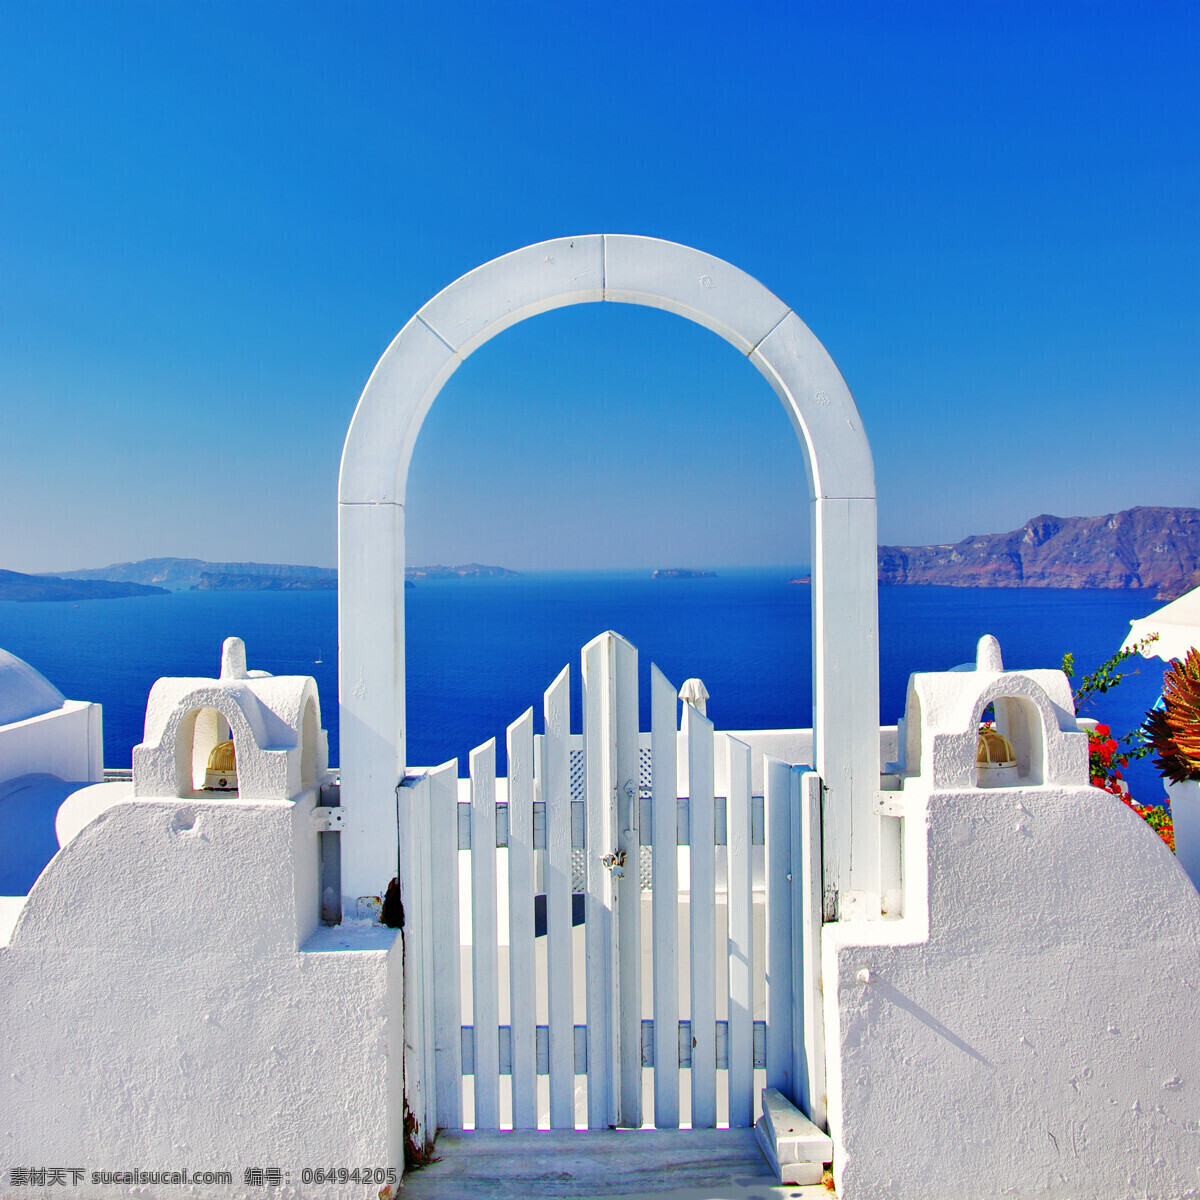 美丽 希腊 海岸 风景 美丽海岸风景 希腊城市风景 希腊旅游景点 海边 大海风景 海面风景 美丽风景 大海图片 风景图片